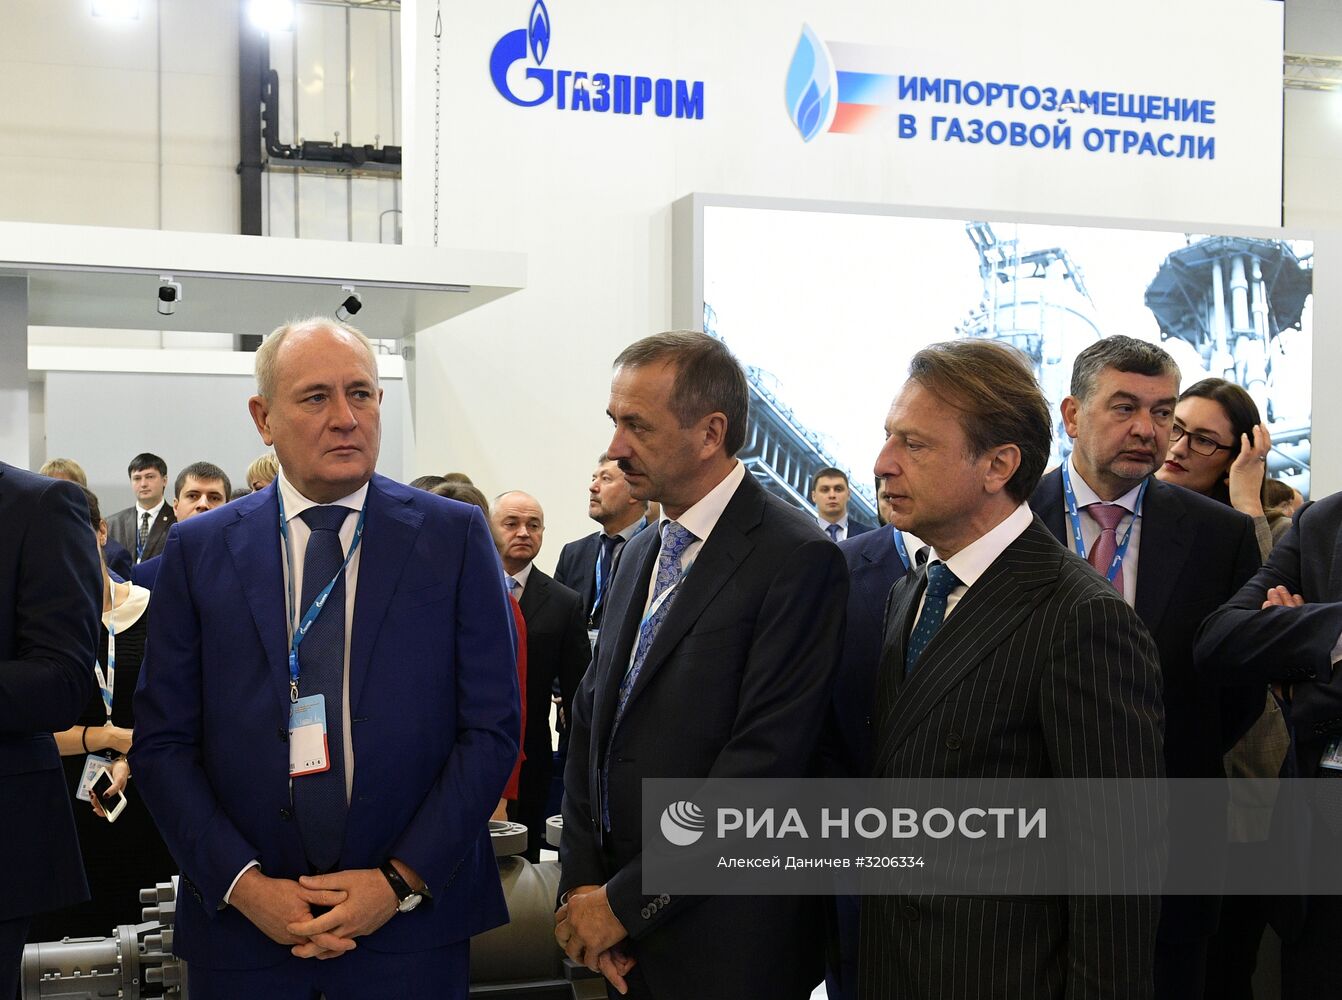 VII Петербургский международный газовый форум